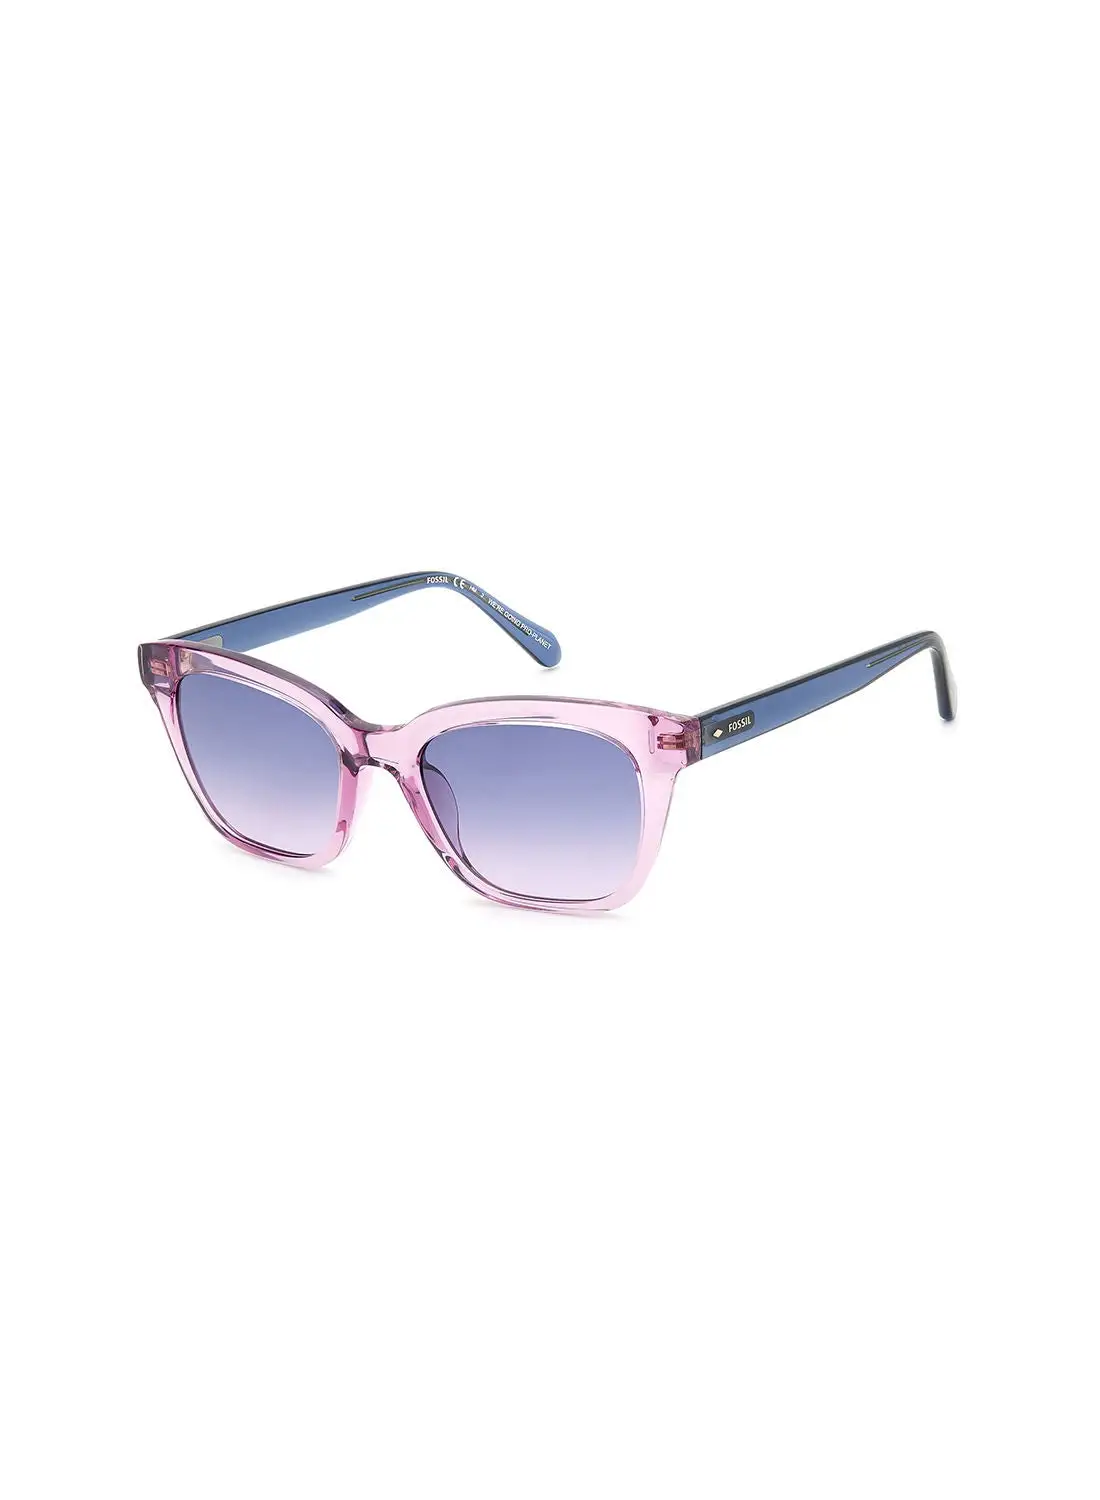 FOSSIL نظارة شمسية مربعة للنساء للحماية من الأشعة فوق البنفسجية - Fos 2126/G/S Lilac 51 - مقاس العدسة: 51 ملم